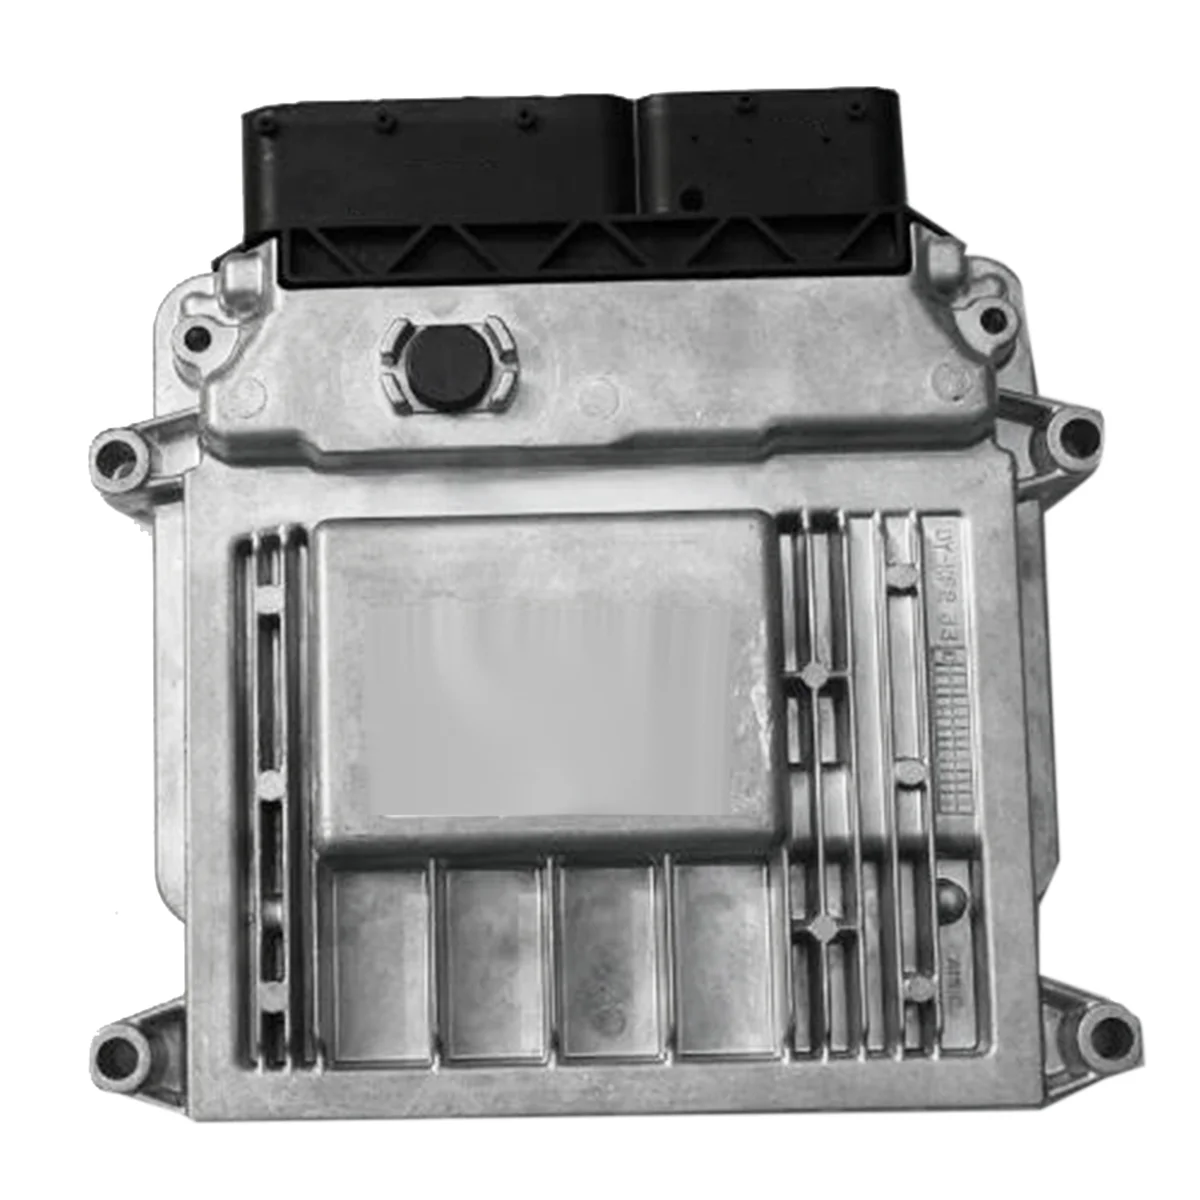 

Car Engine Computer Board ECU Module 39106-26801 805 M7.9.8 for Hyundai Elantra 2005-2016 Electronic Control Unit